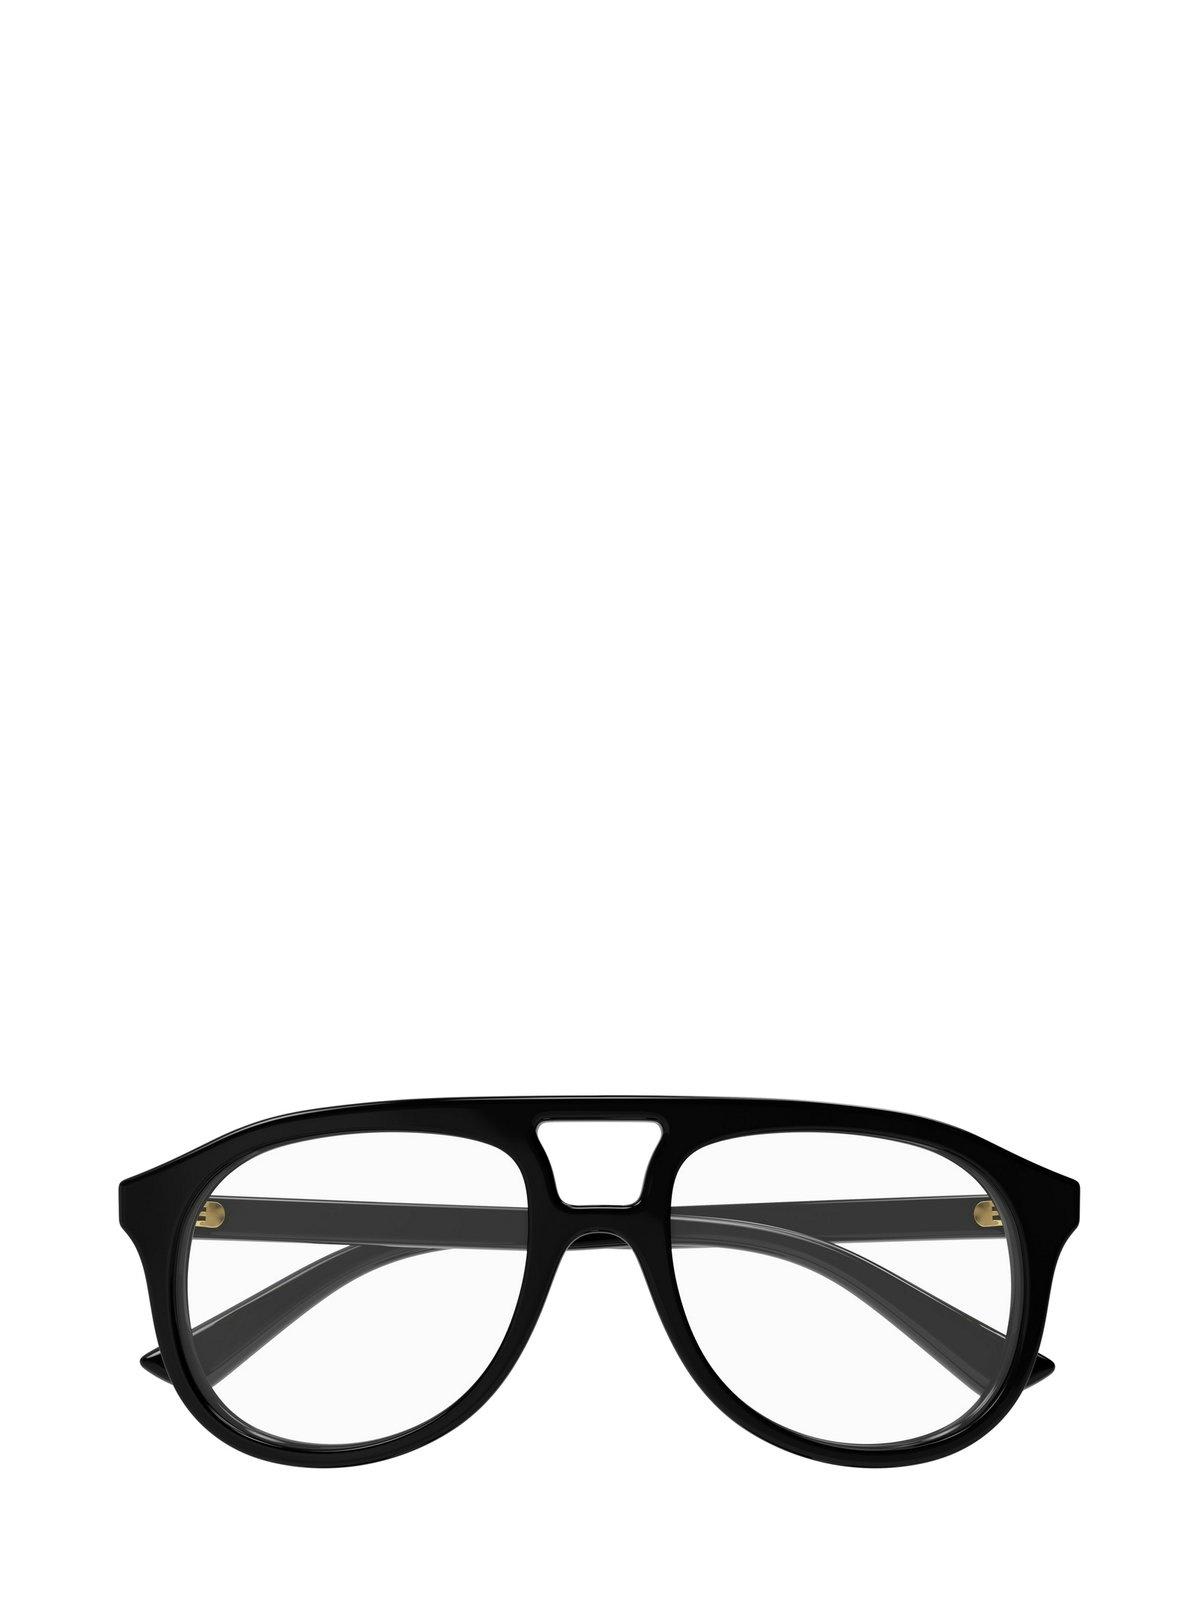 Aviator Frame Glasses